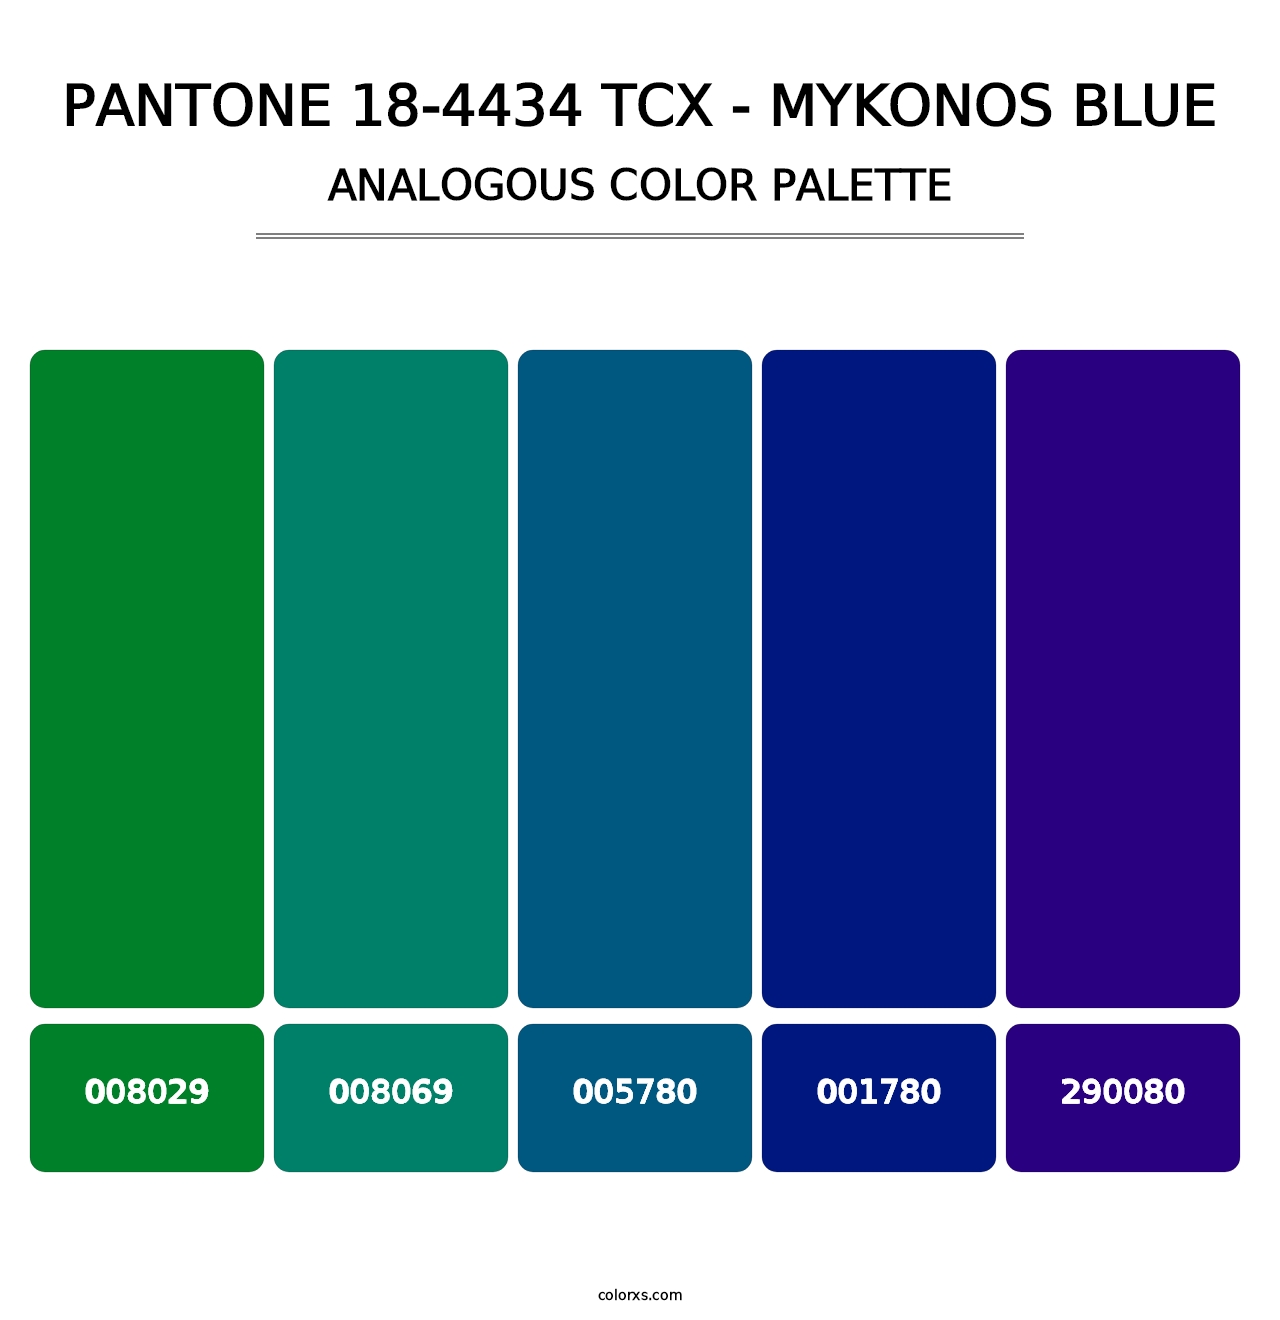 PANTONE 18-4434 TCX - Mykonos Blue - Analogous Color Palette